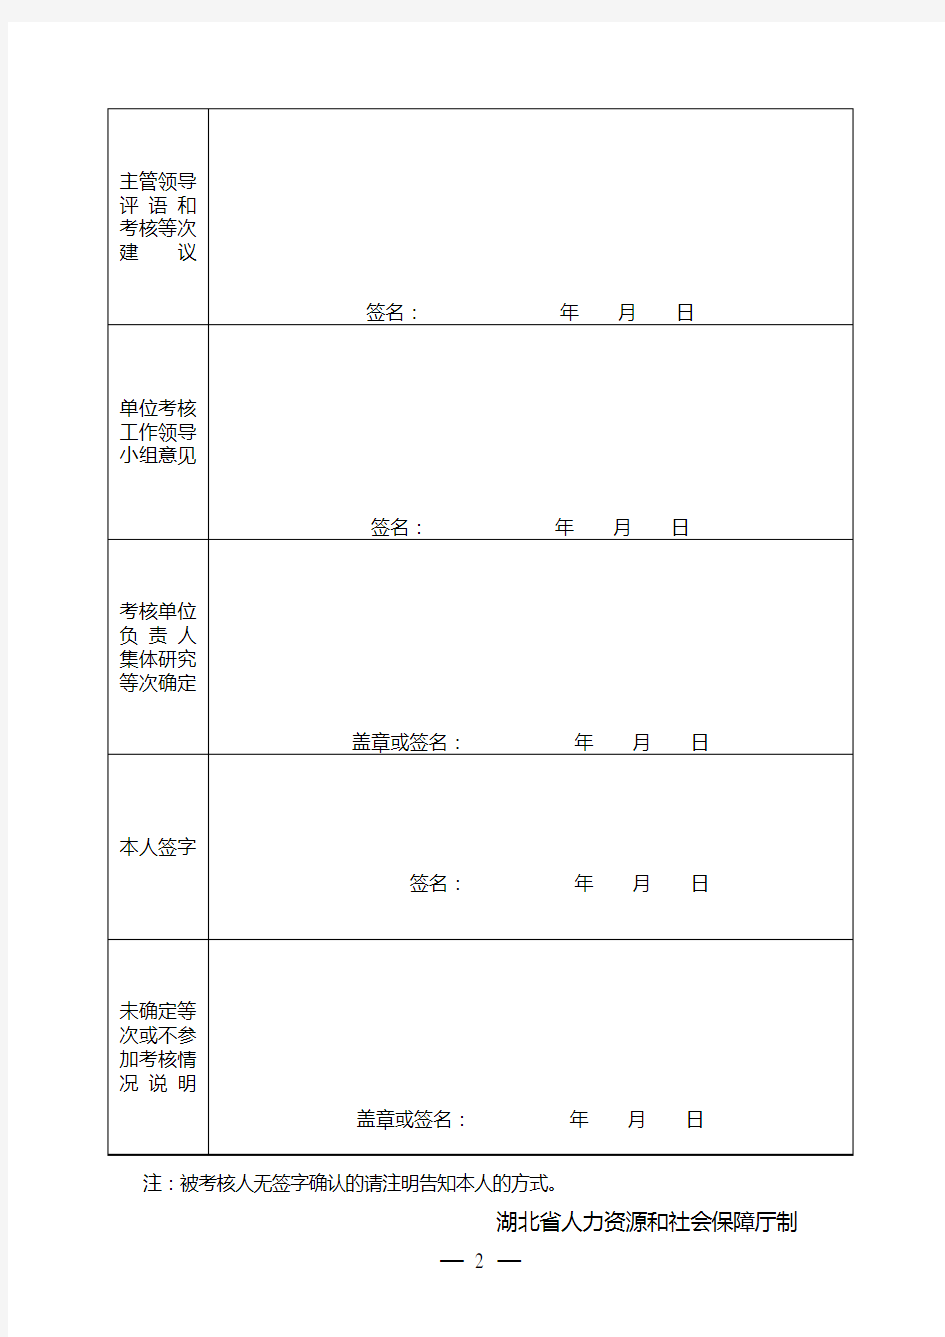 3、湖北省事业单位工作人员年度考核登记表(请用A4纸张正反打印)